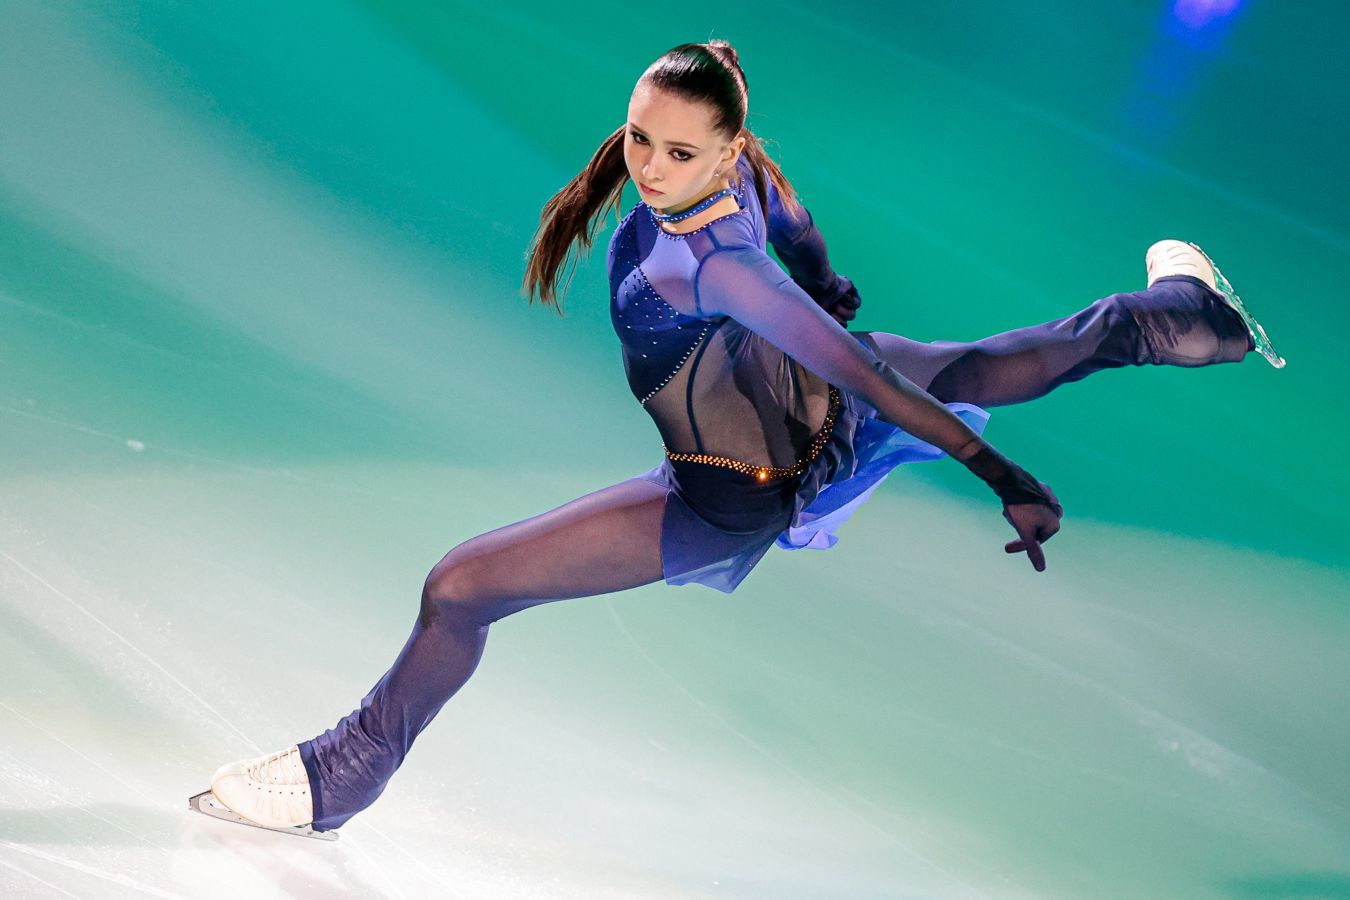 Полное решение суда против Валиевой опубликовано к десятилетию Сочинской олимпиады